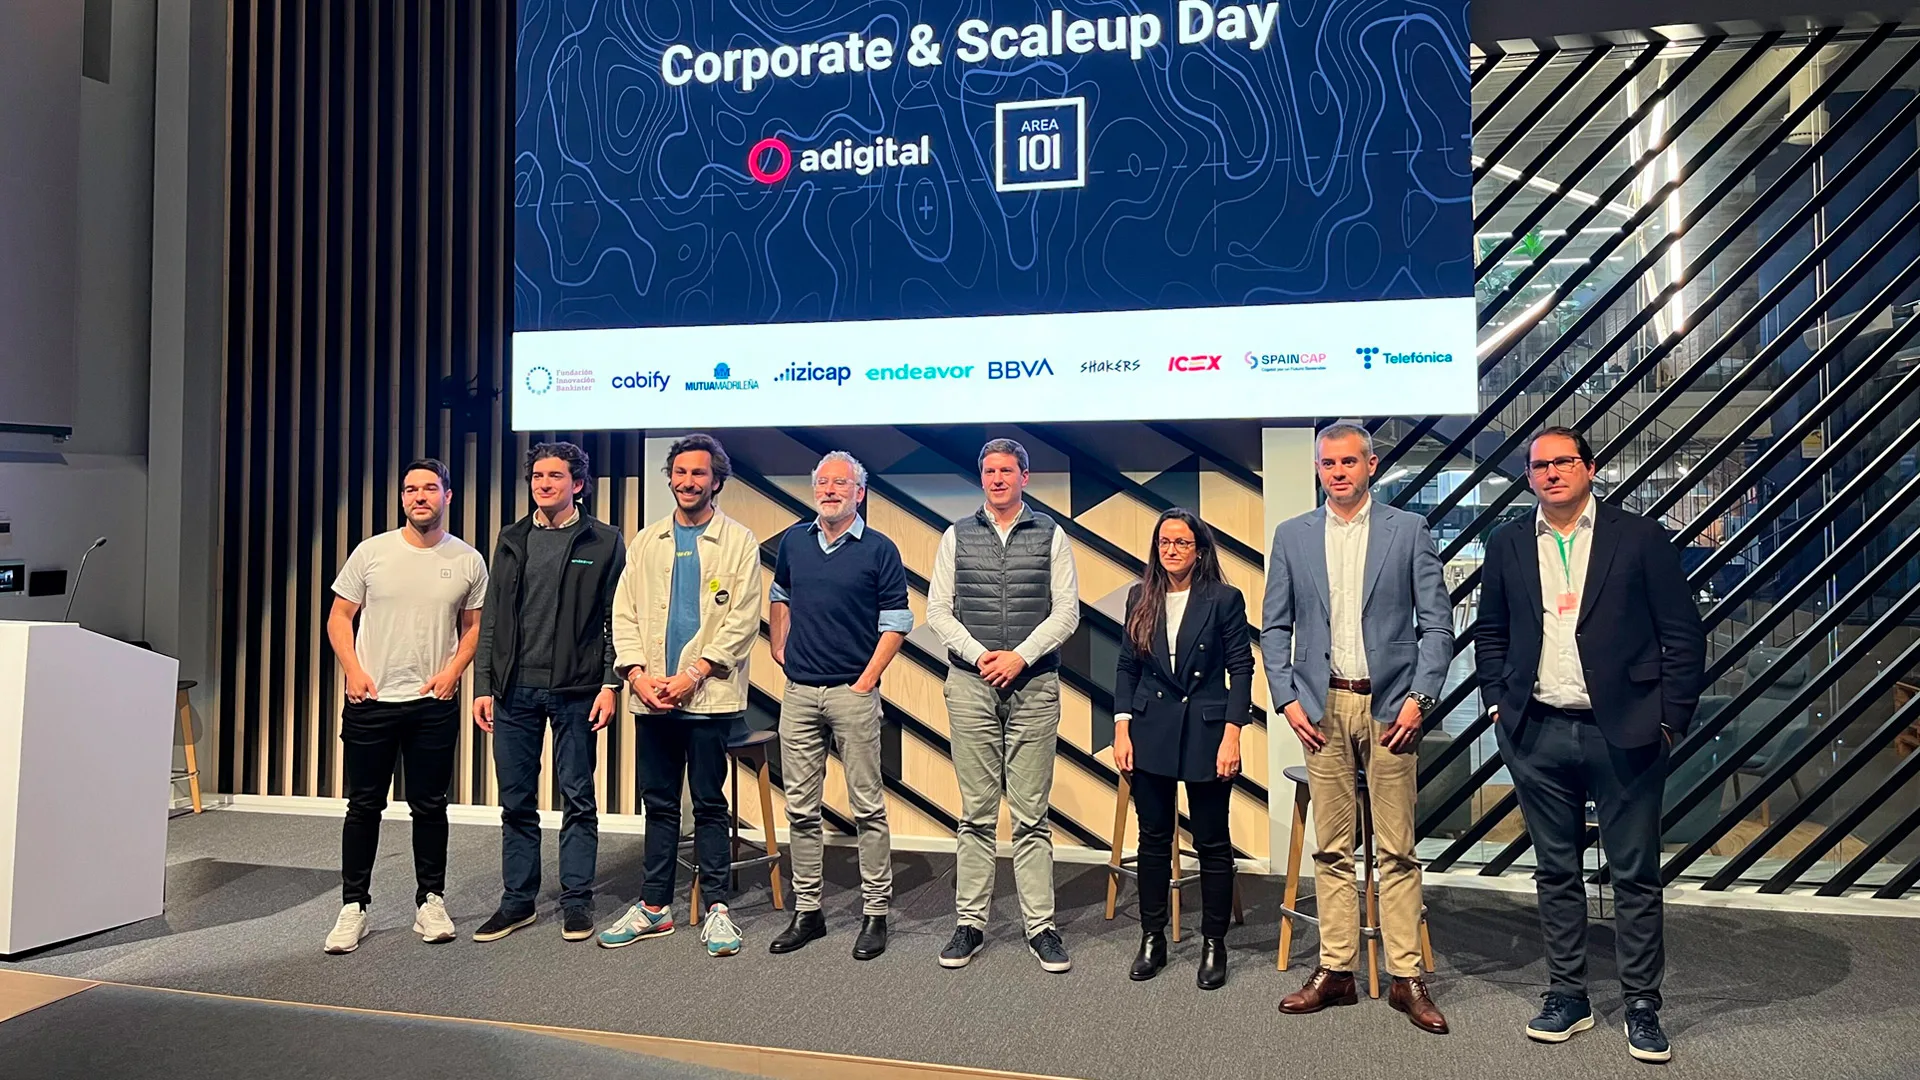 Adigital y Area101 celebran “Corporate and Scaleup Day” para analizar los beneficios de la colaboración entre grandes corporaciones y scaleups